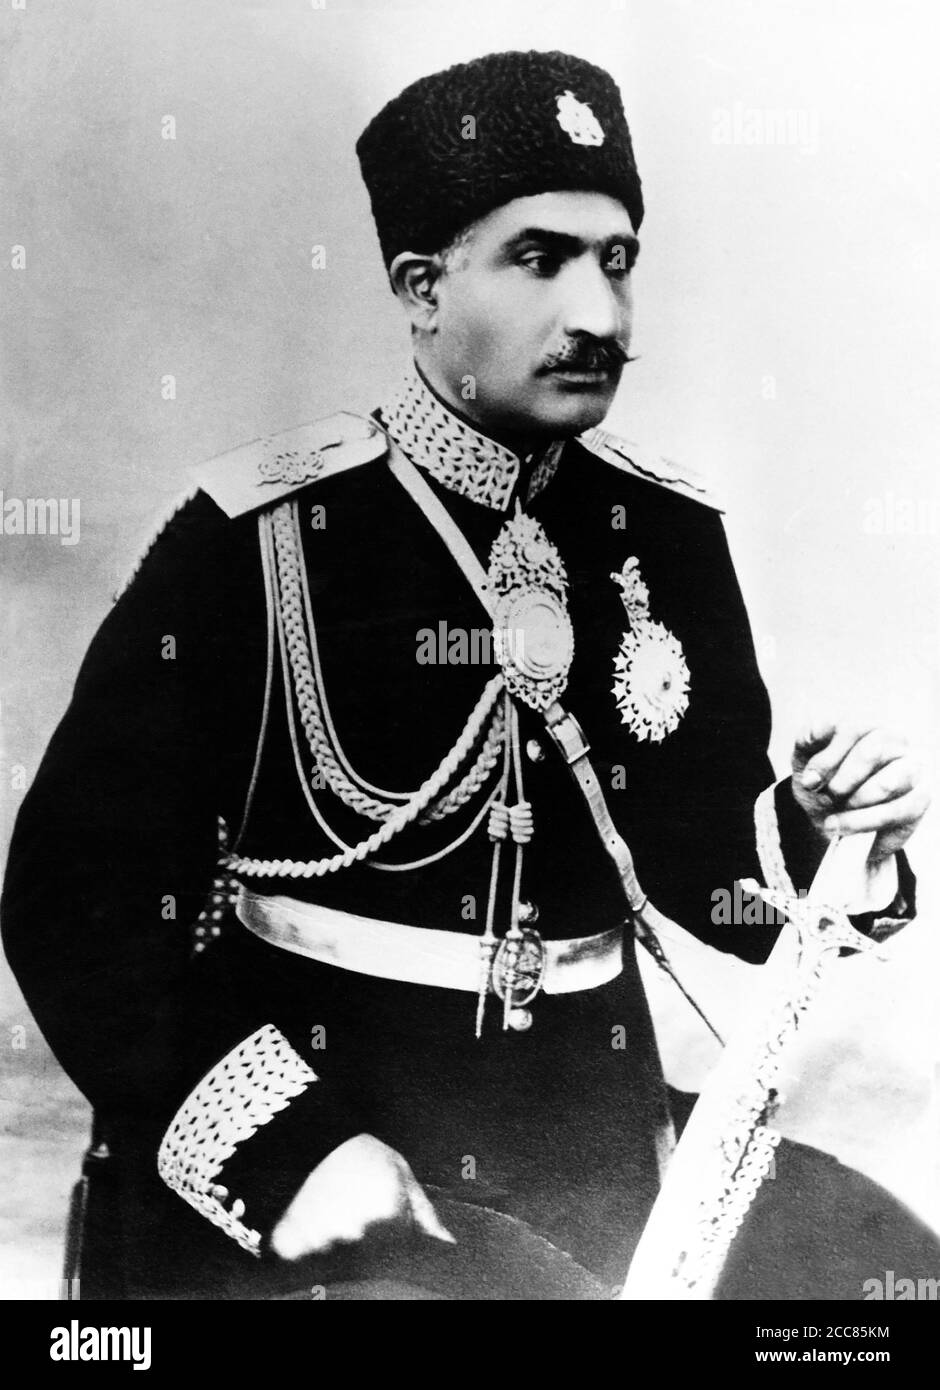 Iran: Reza Shah Pahlavi (1878-1944), durante il suo tempo come ministro della guerra, c.. 1921-1923. Nacque nel villaggio di Alasht nel 1878 e si unì alla Brigata cosacca persiana quando aveva sedici anni, diventando un generale brigadiere, l'unico comandante iraniano nella sua storia. Sotto la direzione britannica, Reza aiutò ad orchestrare un colpo di stato nel 1921 che rovesciò il governo precedente, nominandosi Ministro della Guerra e Sardar Sefah (Comandante in capo dell'esercito). Divenne primo ministro nel 1923, e più tardi fu nominato monarca legale di Shah e Iran nel 1925, fondando la dinastia Pahlavi. Foto Stock